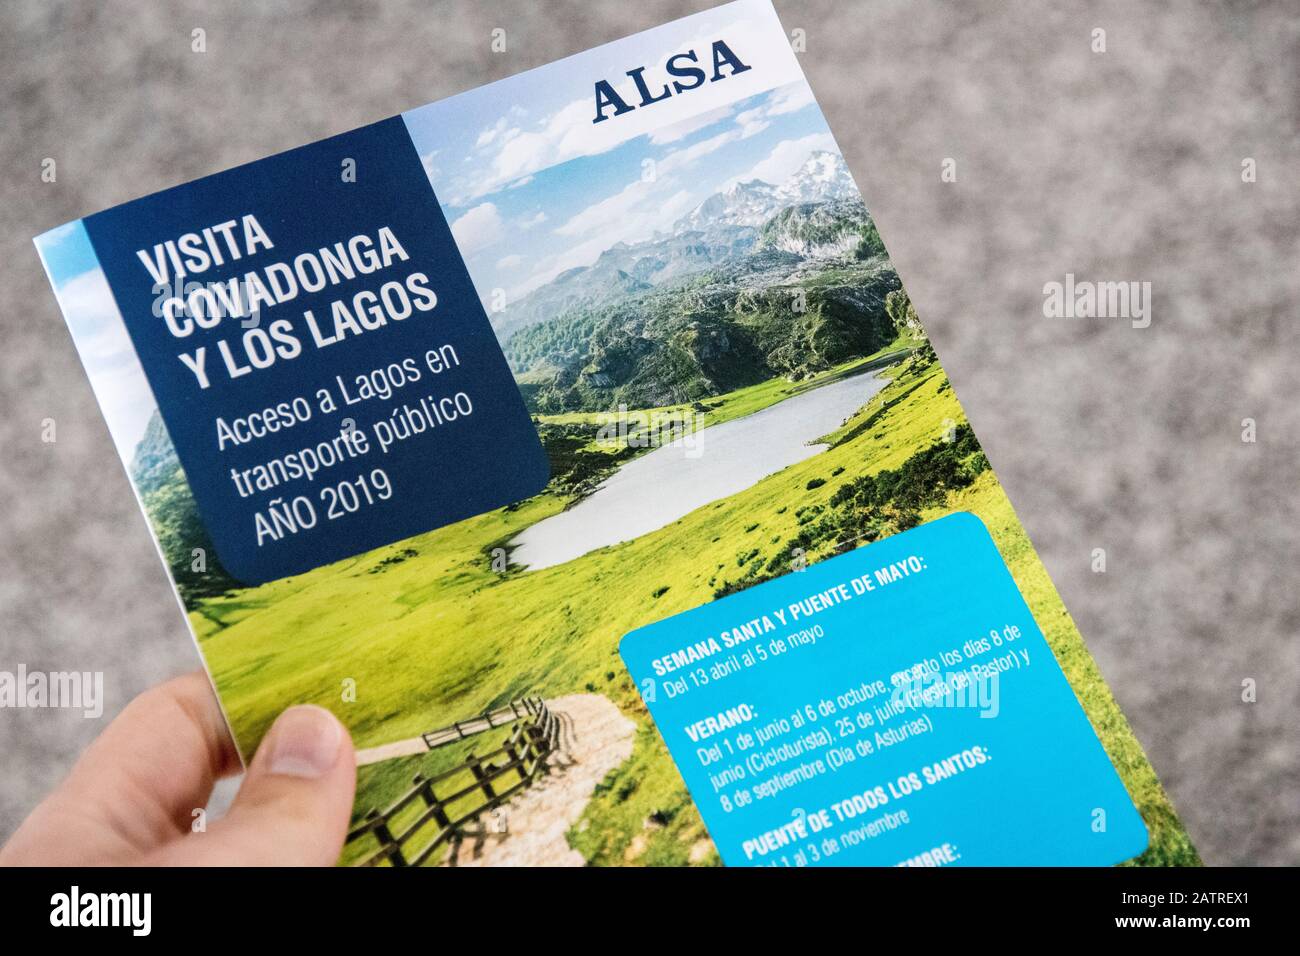 Cangas De Onis, Espagne. Brochure avec les horaires tableaux horaires des bus ALSA transportant des touristes vers les lacs de Covadonga Banque D'Images